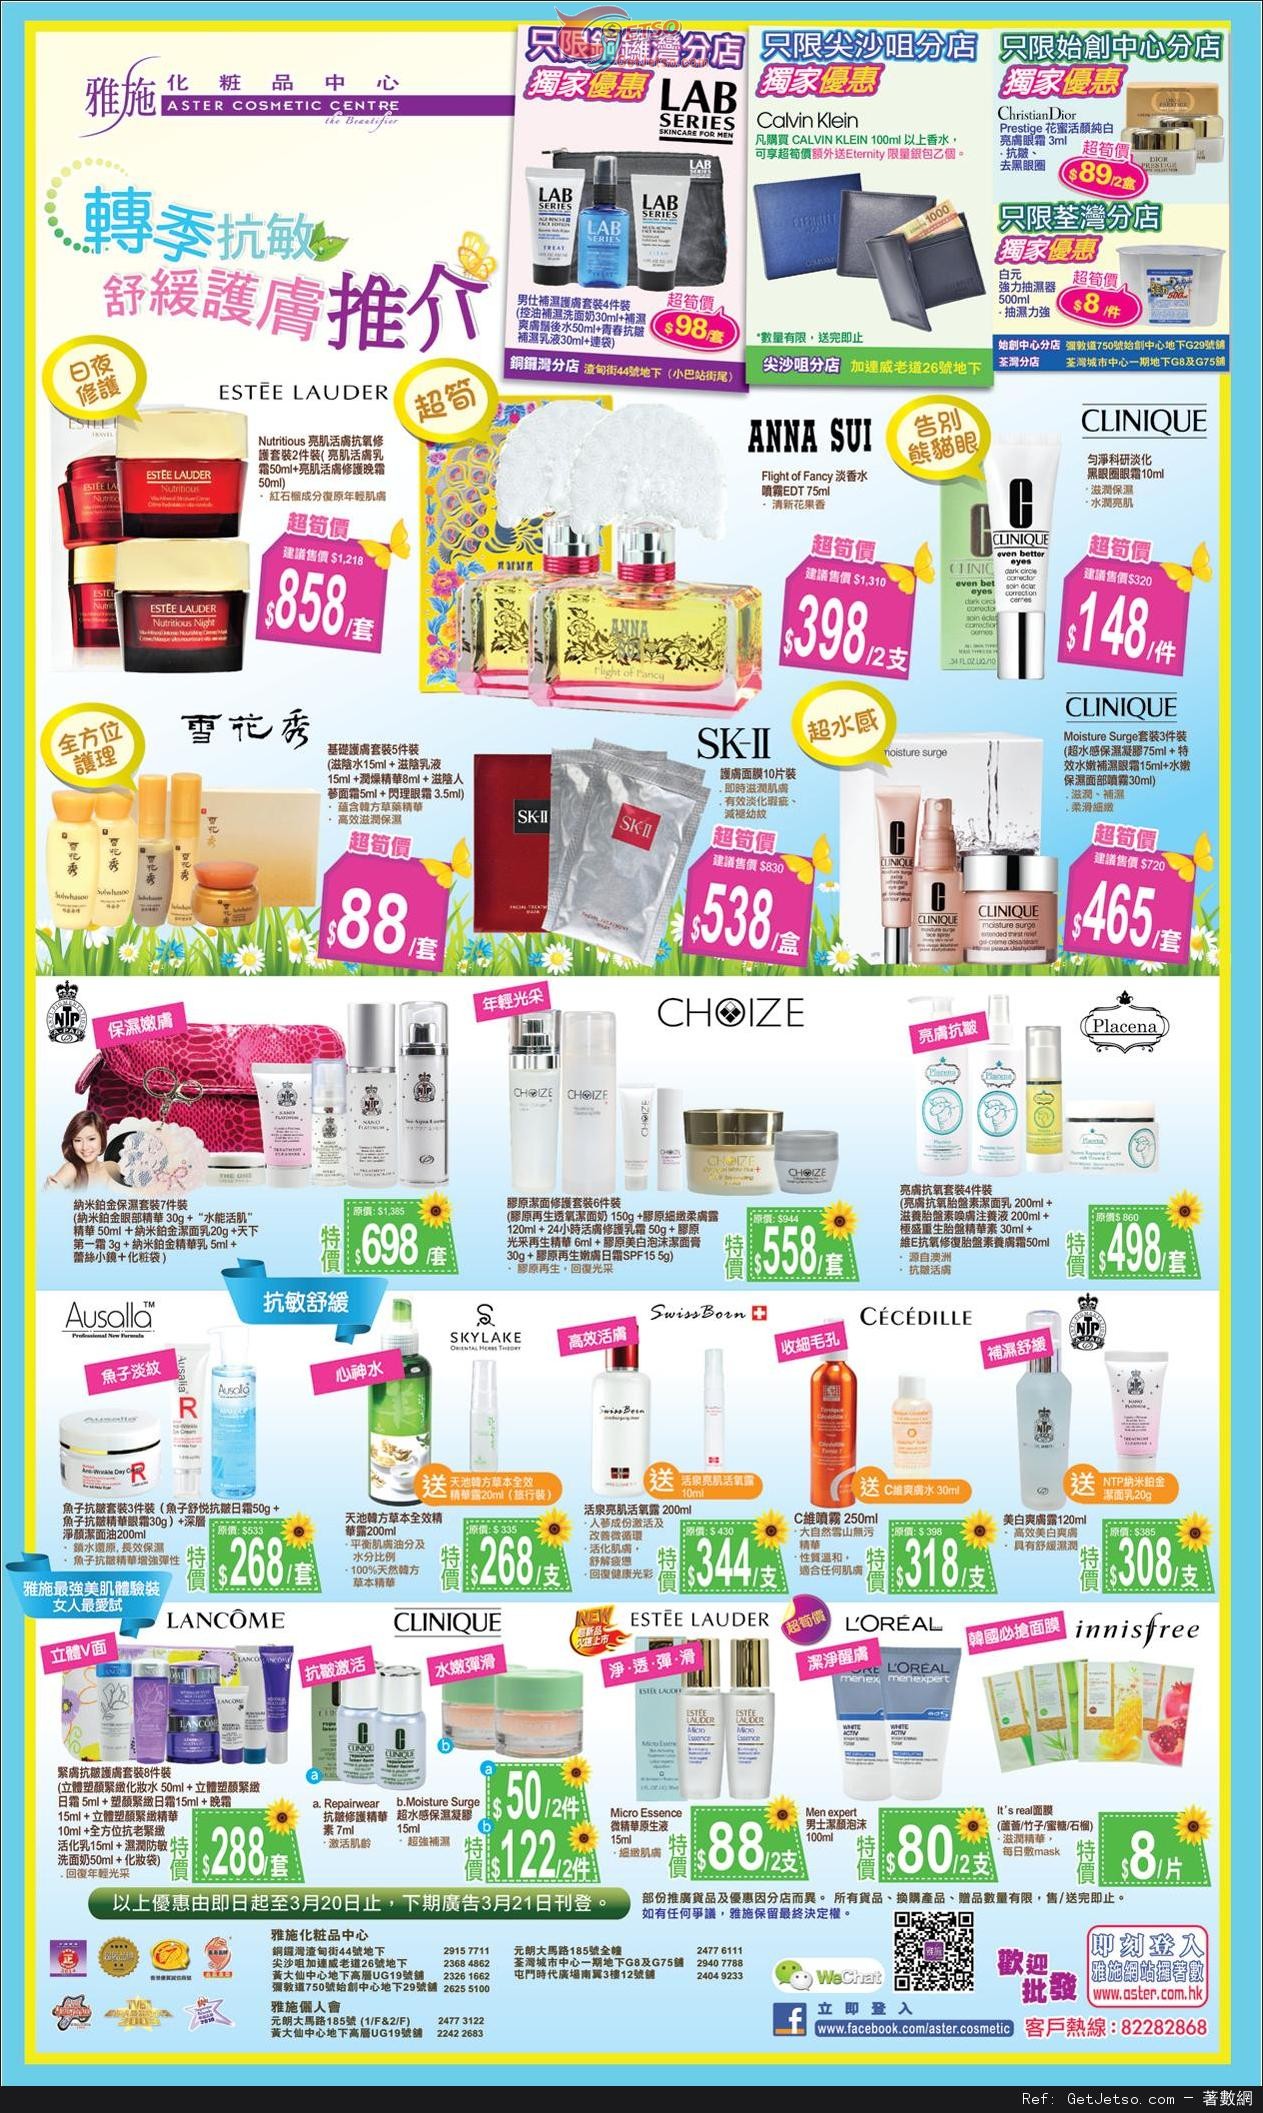 雅施換季抗敏舒緩護膚產品購買優惠(至14年3月20日)圖片1